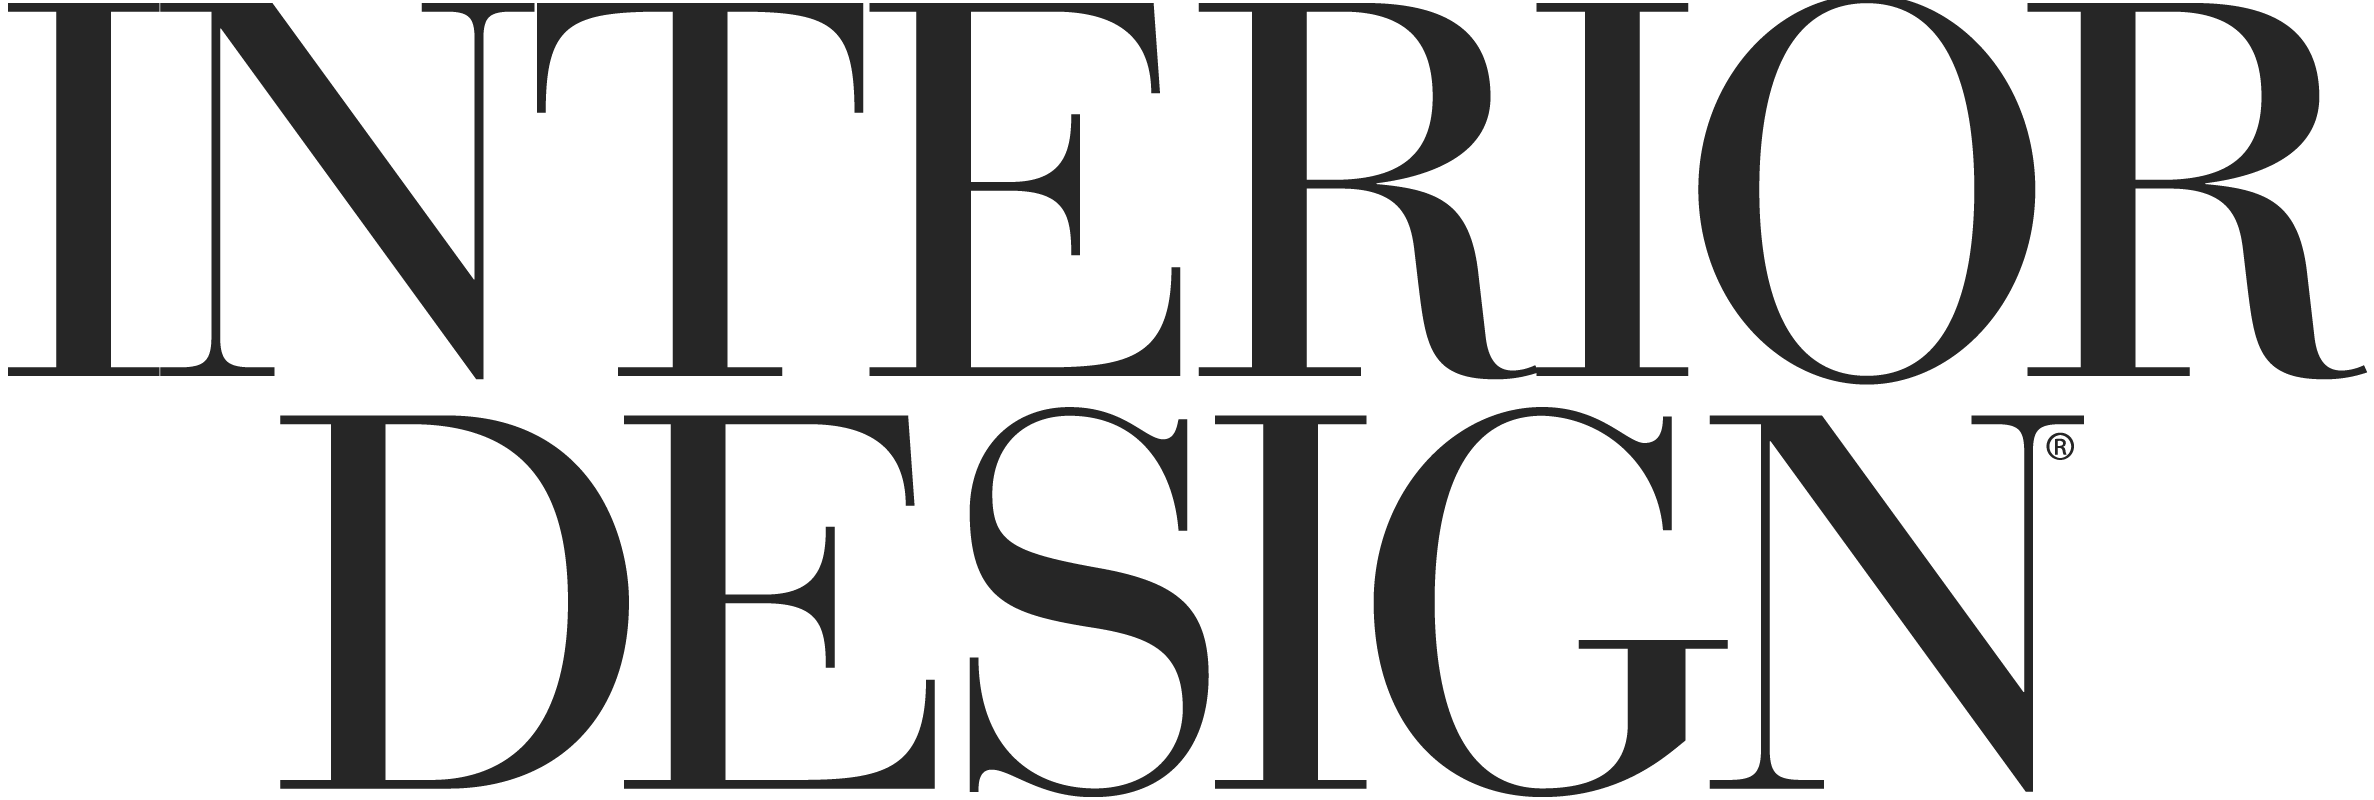 Interior Design Magazine Logo